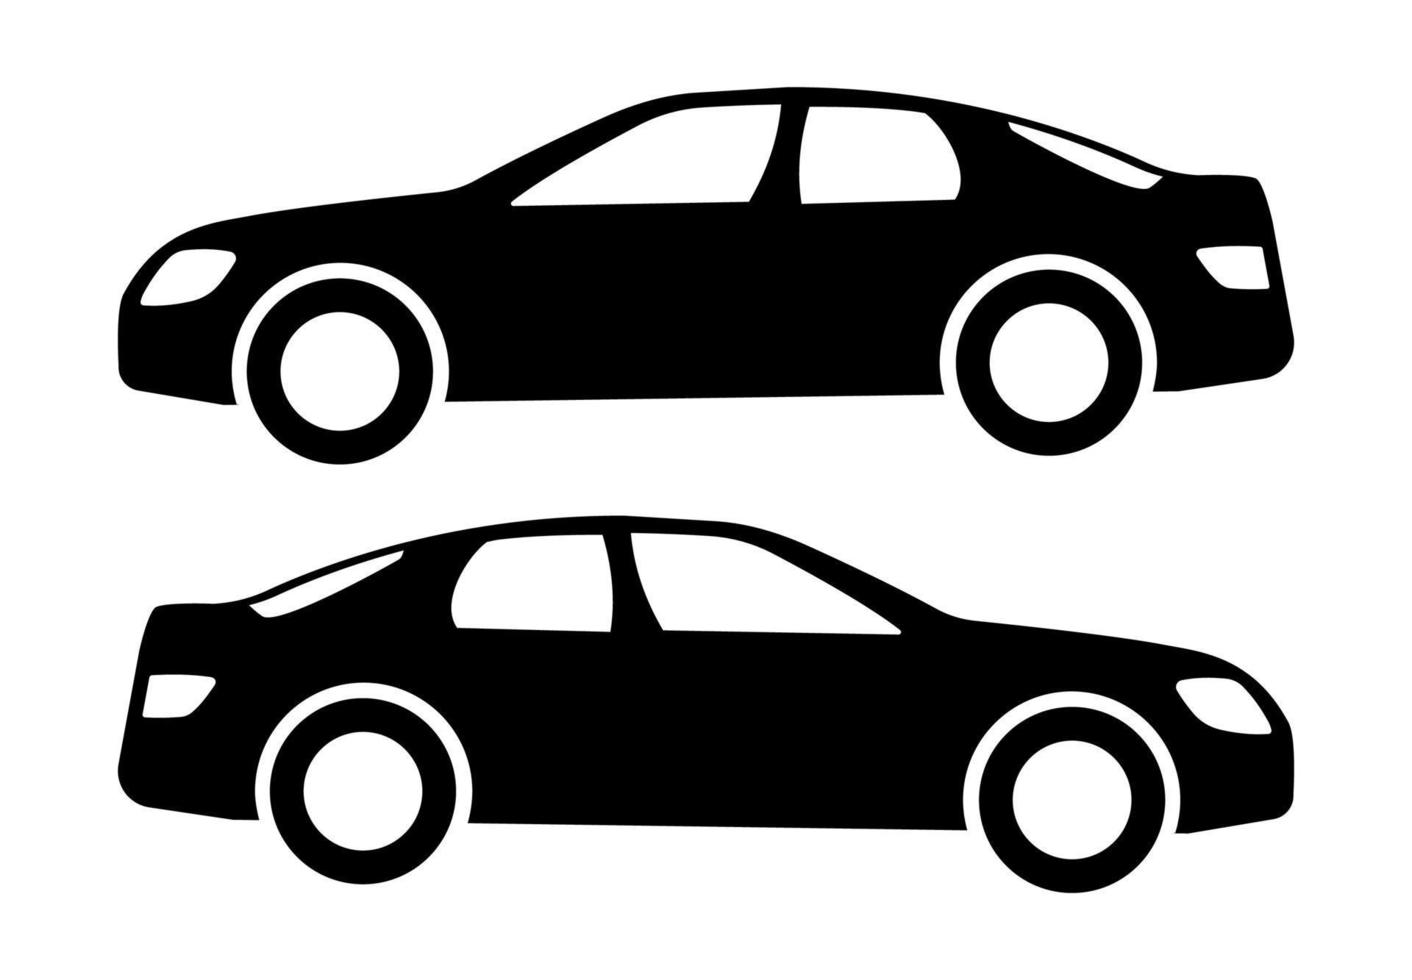 dos siluetas de coches negros sobre un fondo blanco. ilustración vectorial vector